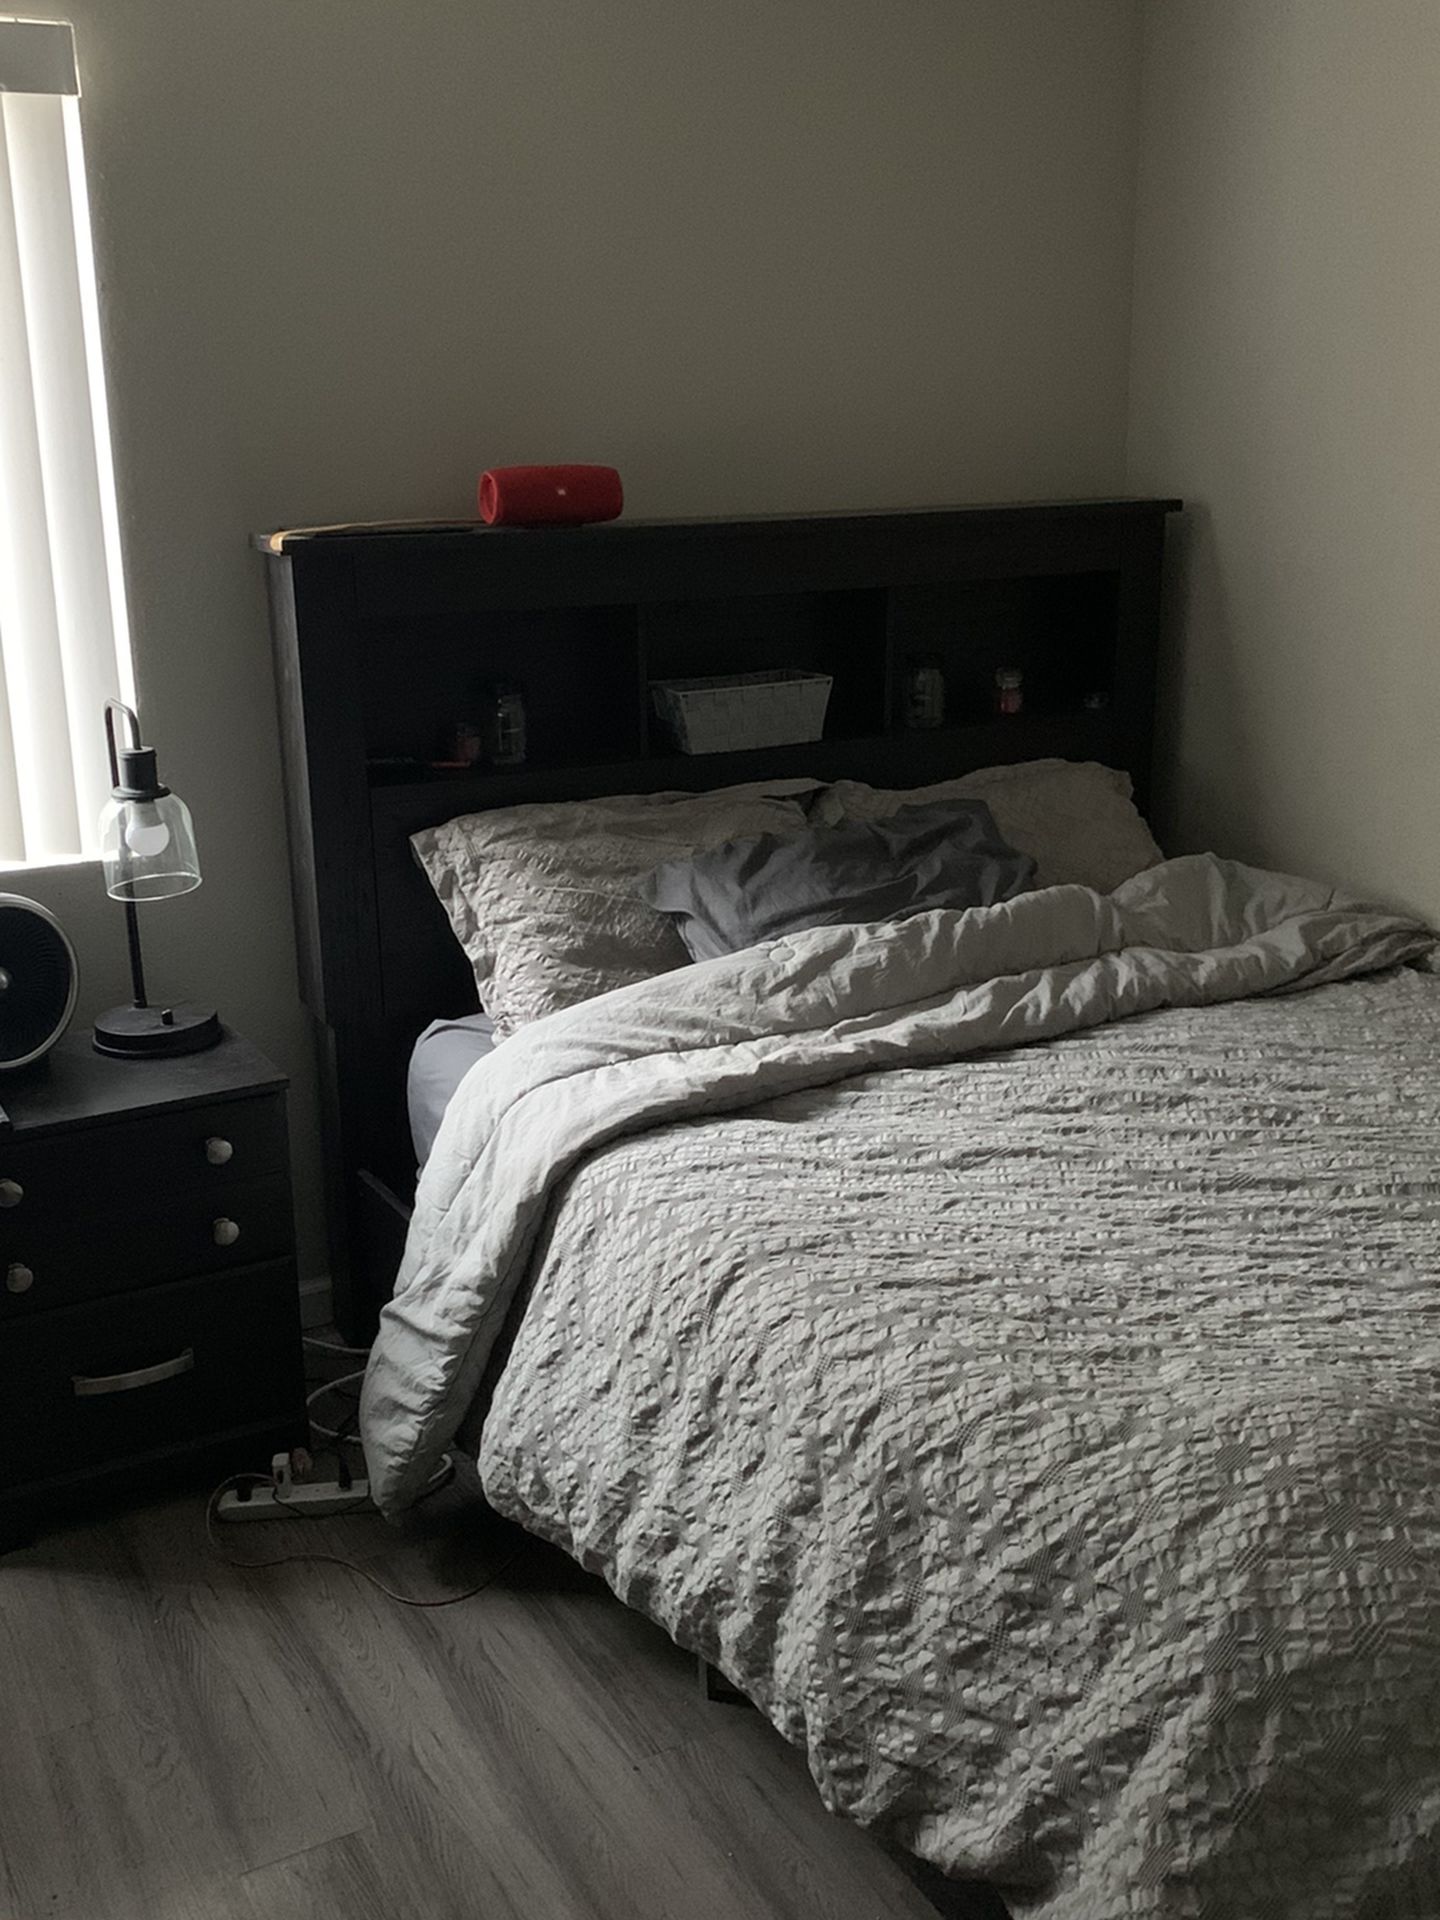 Queen Bedroom Set, Mattress, And TV (Price negotiable)